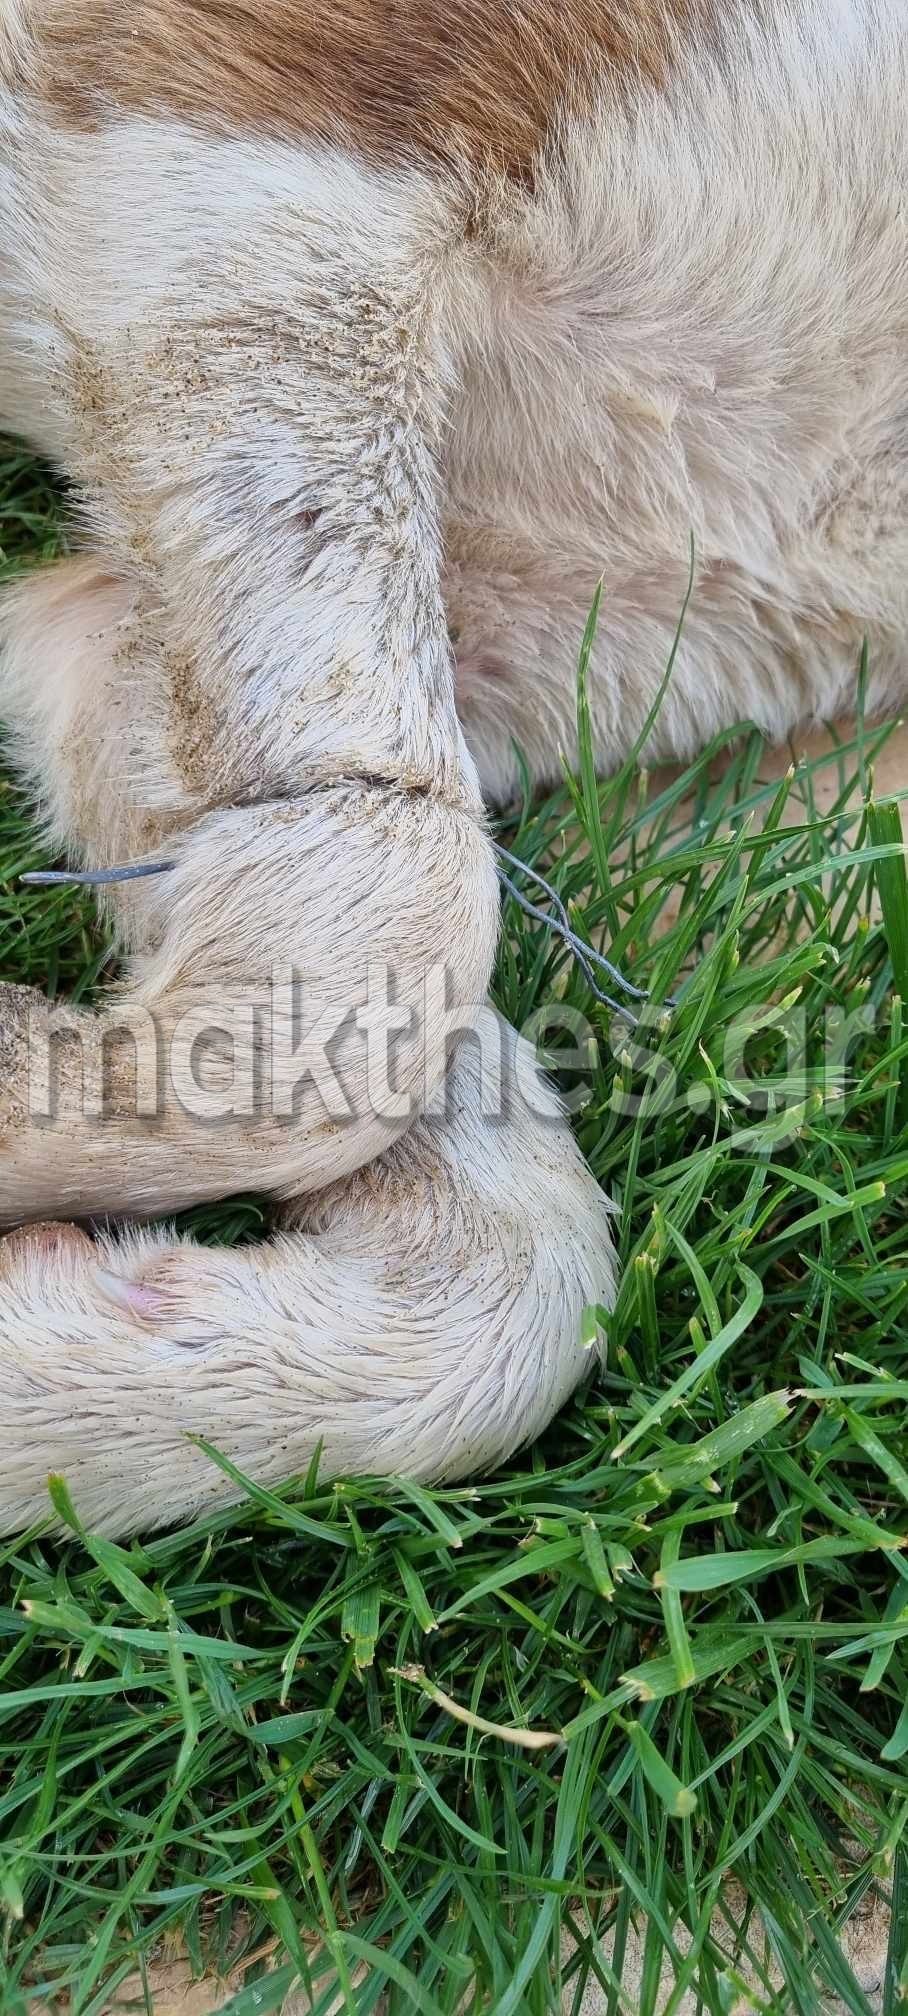 Αποτροπιασμός στη Χαλκιδική: Έδεσαν με σύρμα σκύλο και τον άφησαν στο δρόμο